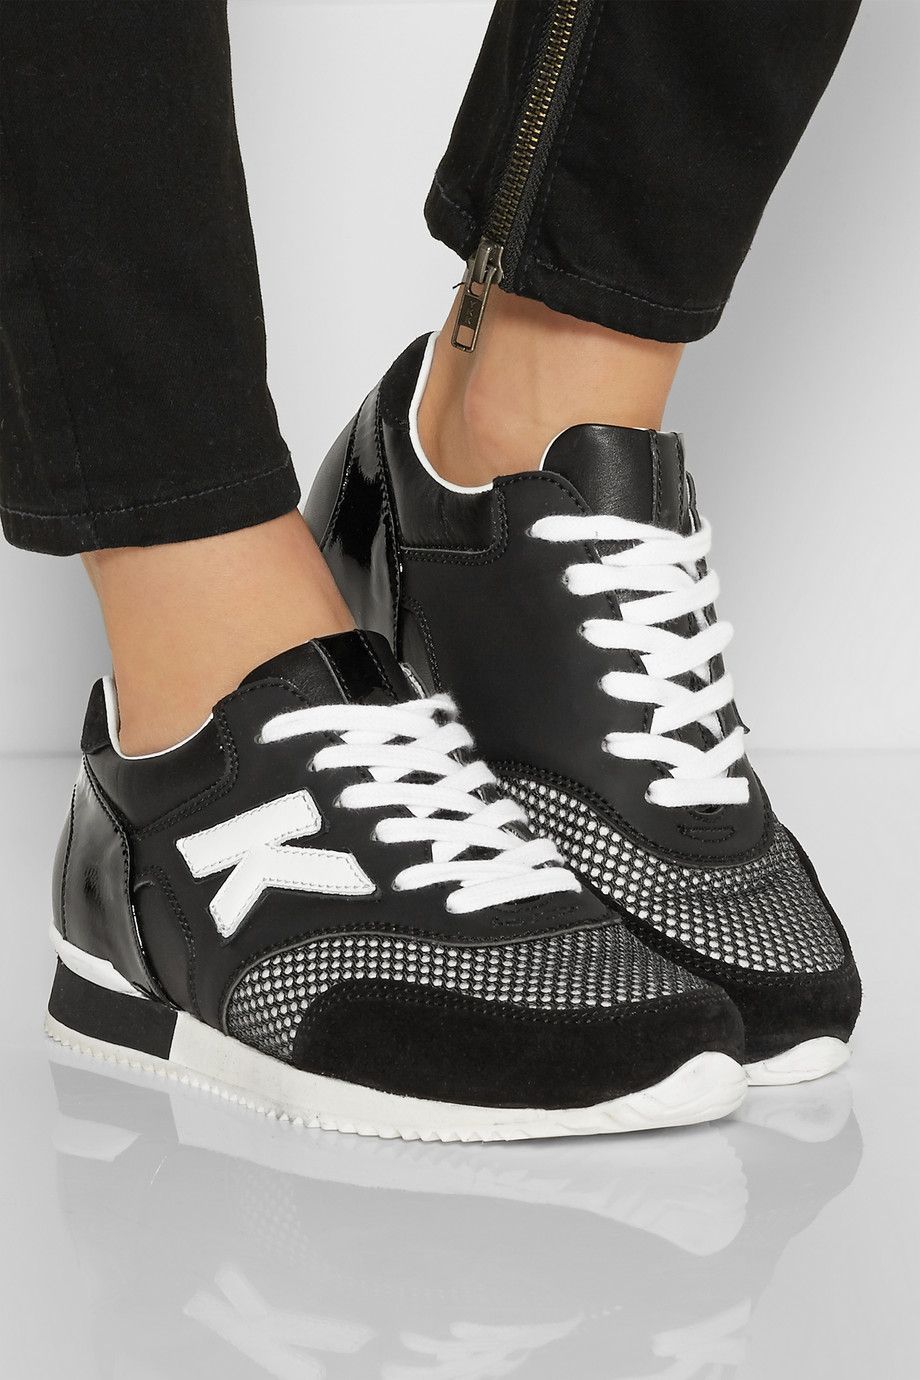 Karl Lagerfeld начинает выпускать кроссовки по индивидуальному заказу